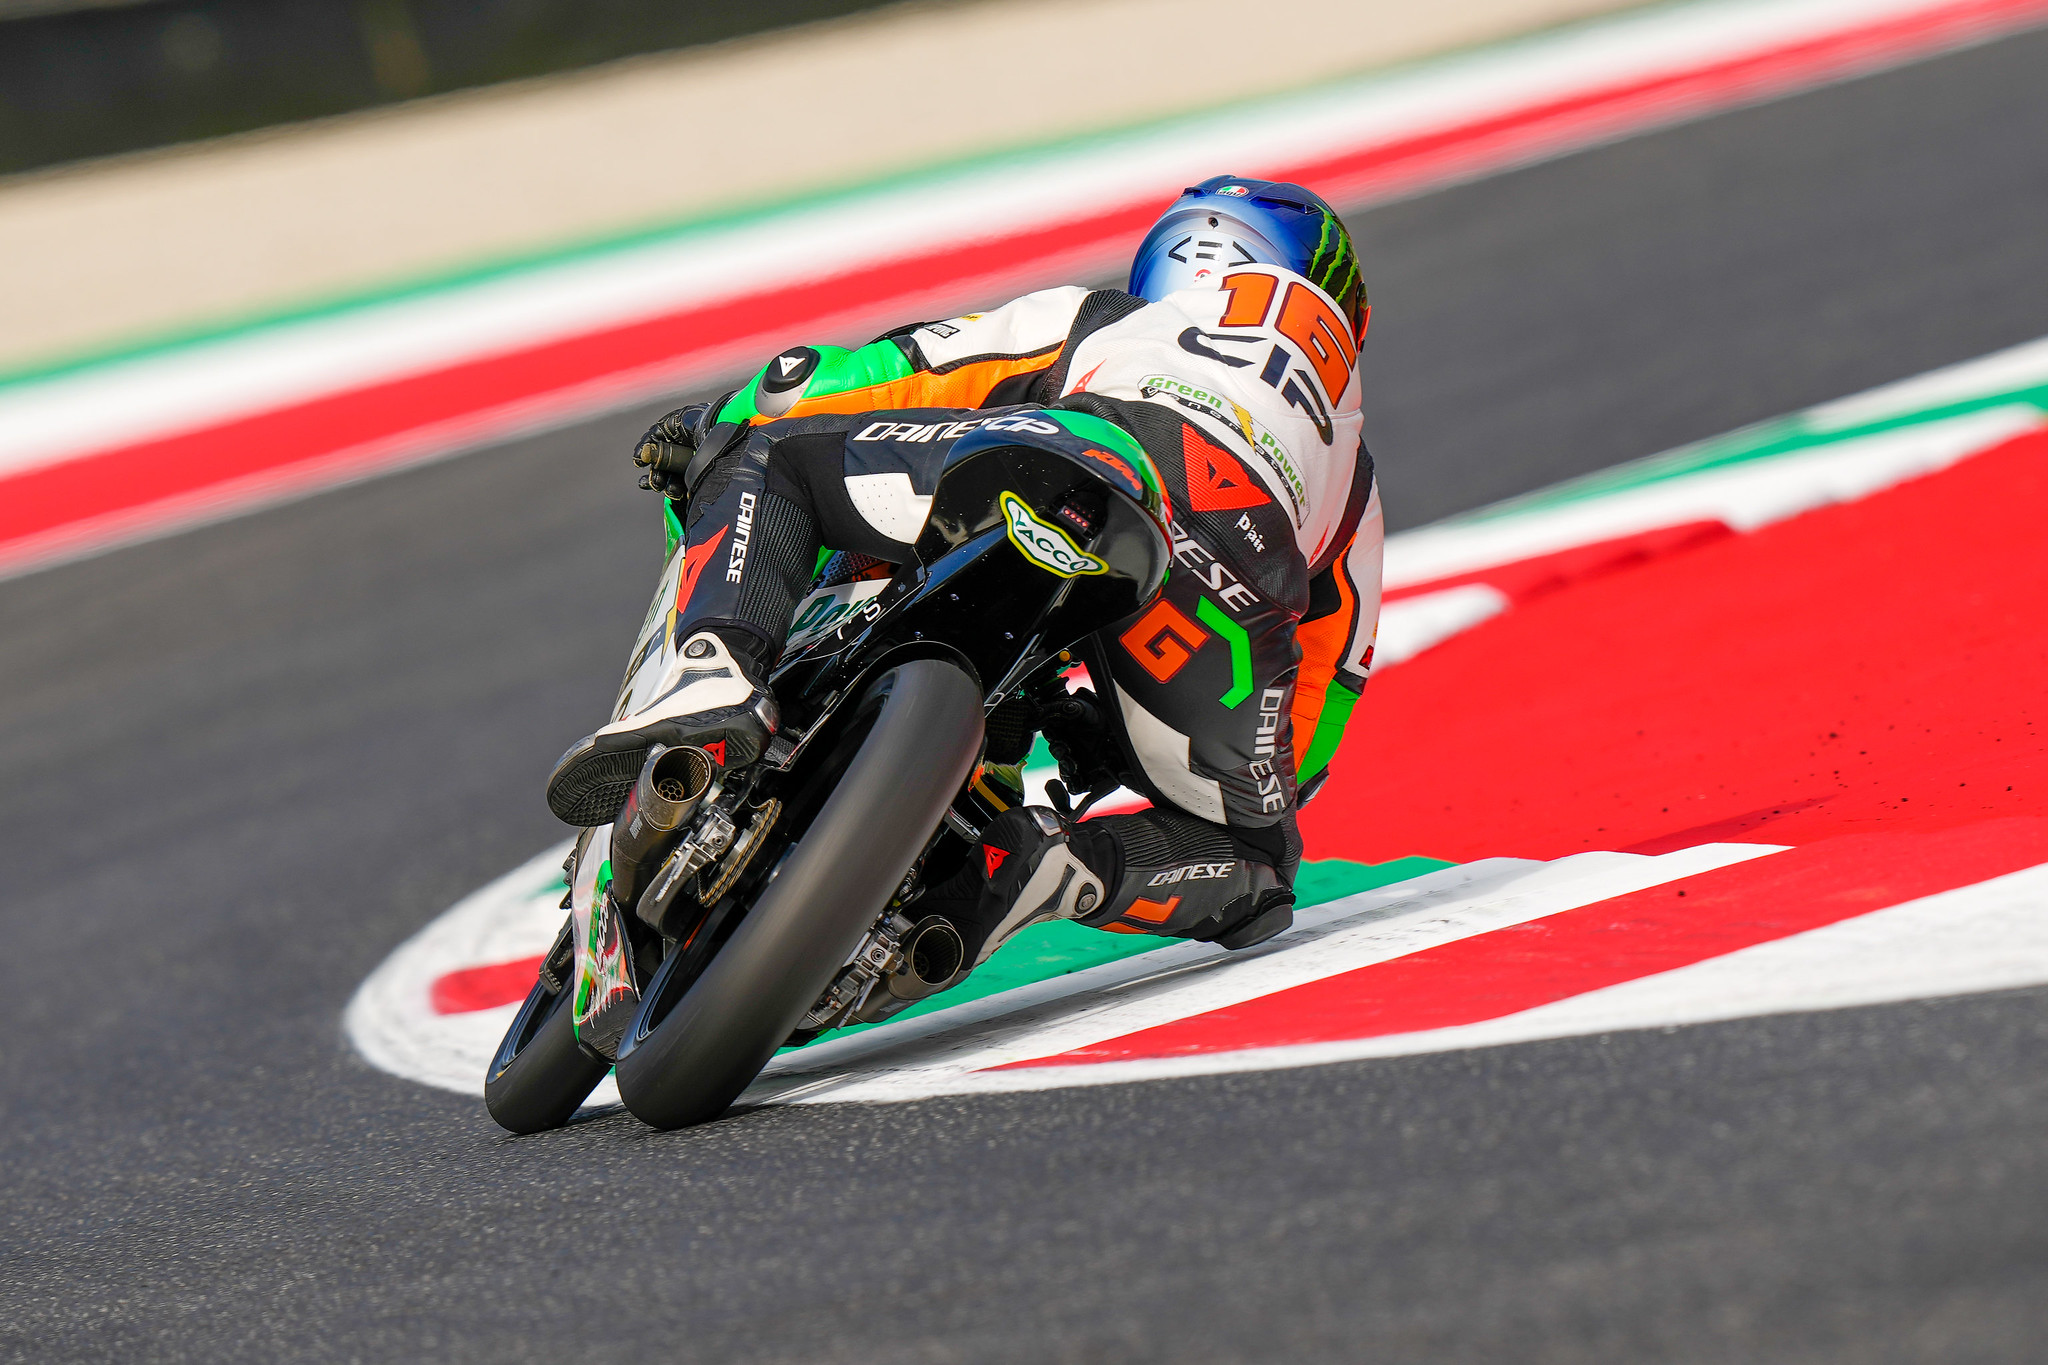 #16 Andrea Migno - (ITA) - CIP Green Power - KTM RC 250 GP